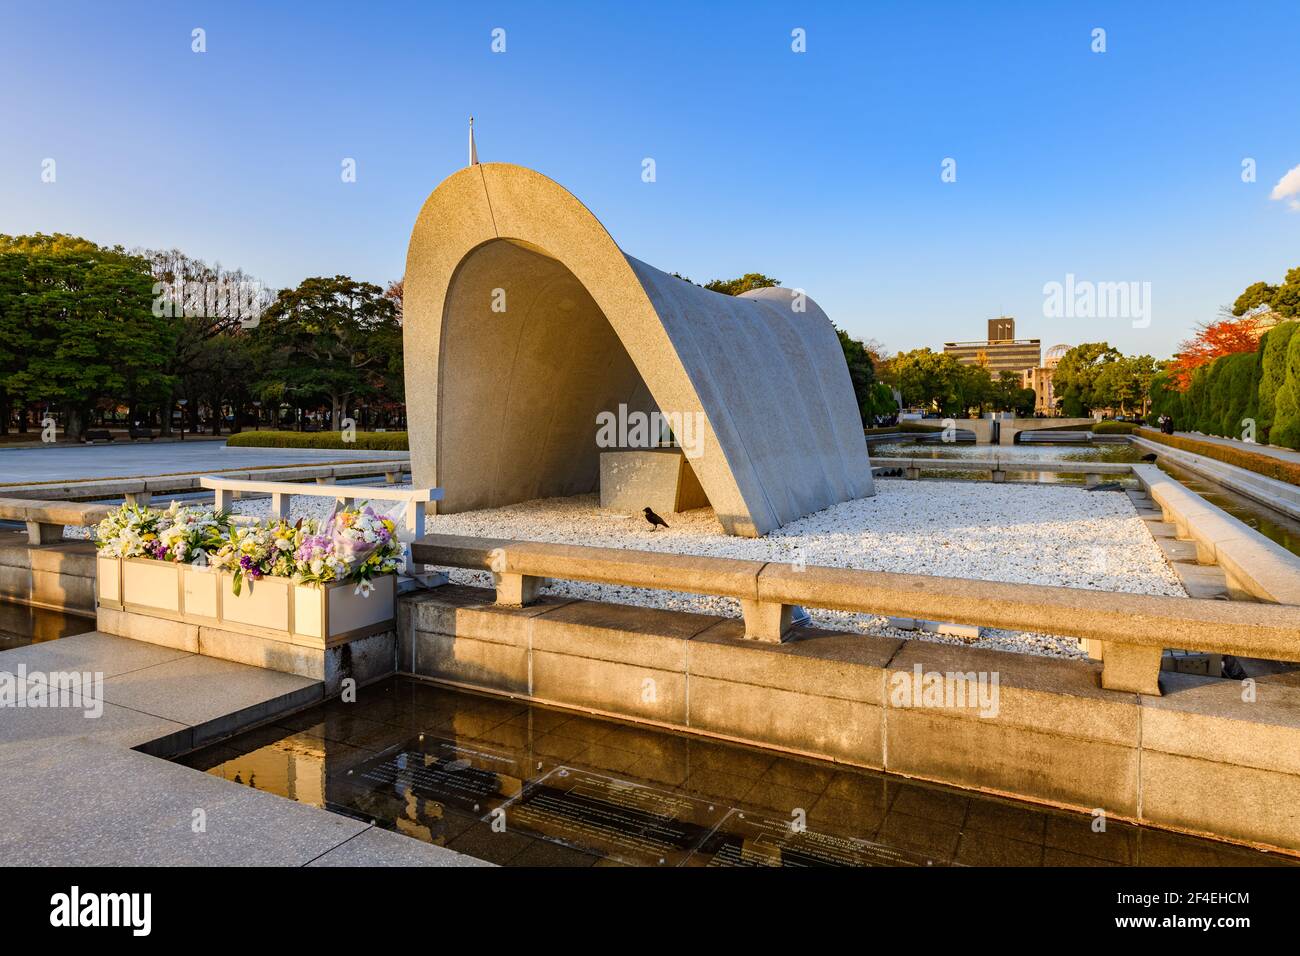 Hiroshima, Japon - 29 novembre 2018 : monument commémoratif de la paix au cénotaphe en souvenir des victimes de la bombe atomique. Le parc commémoratif de la paix d'Hiroshima est visi Banque D'Images